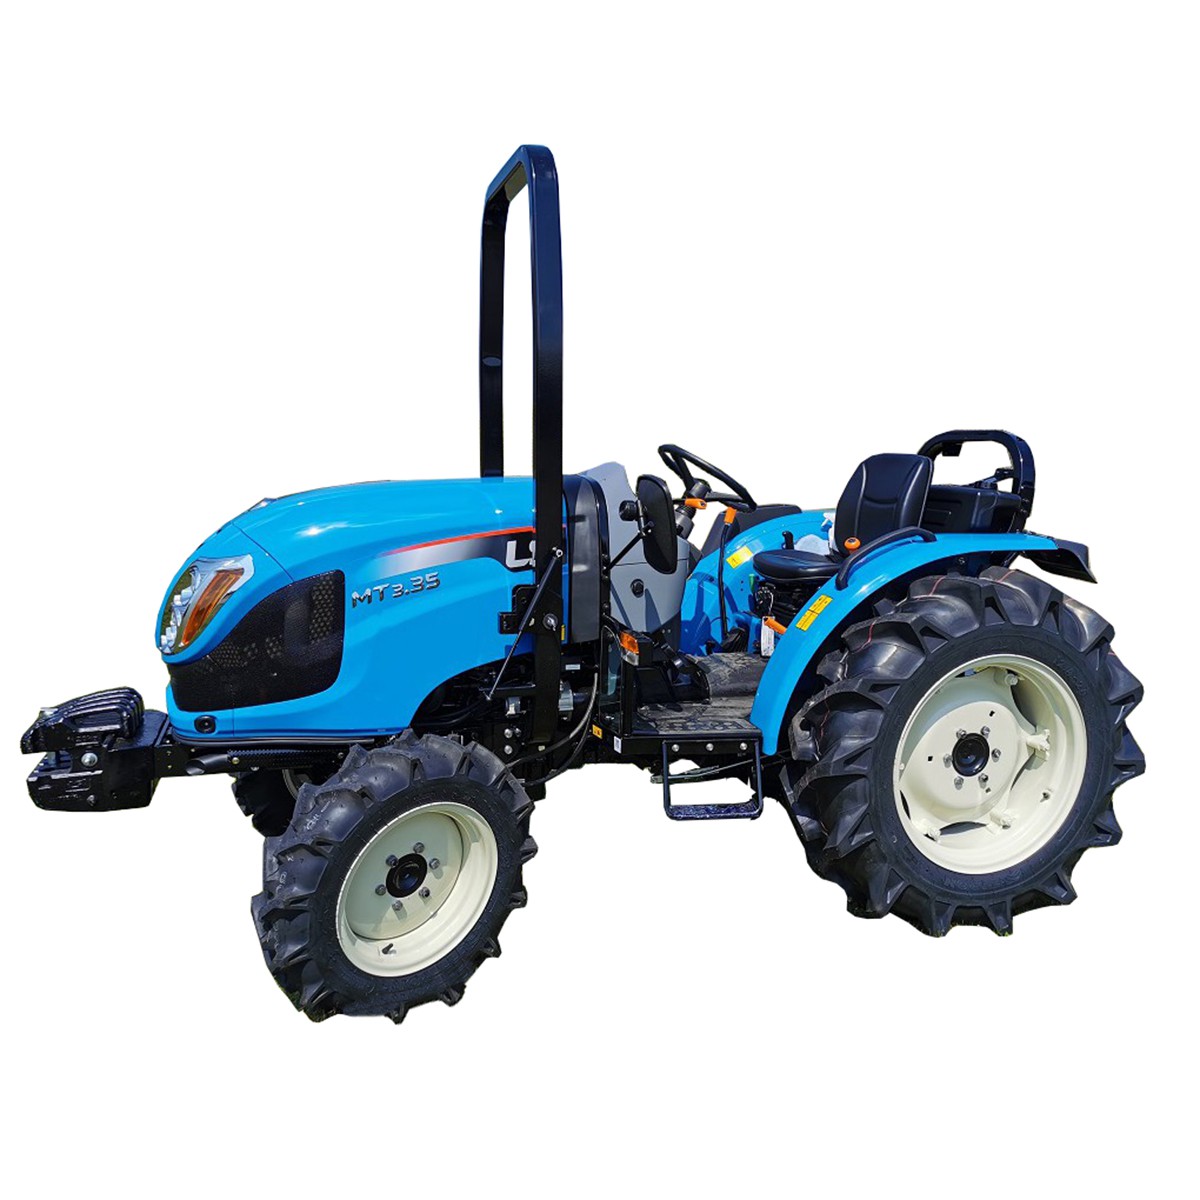 LS Traktor MT3,50 MEC 4x4 - 47 HP